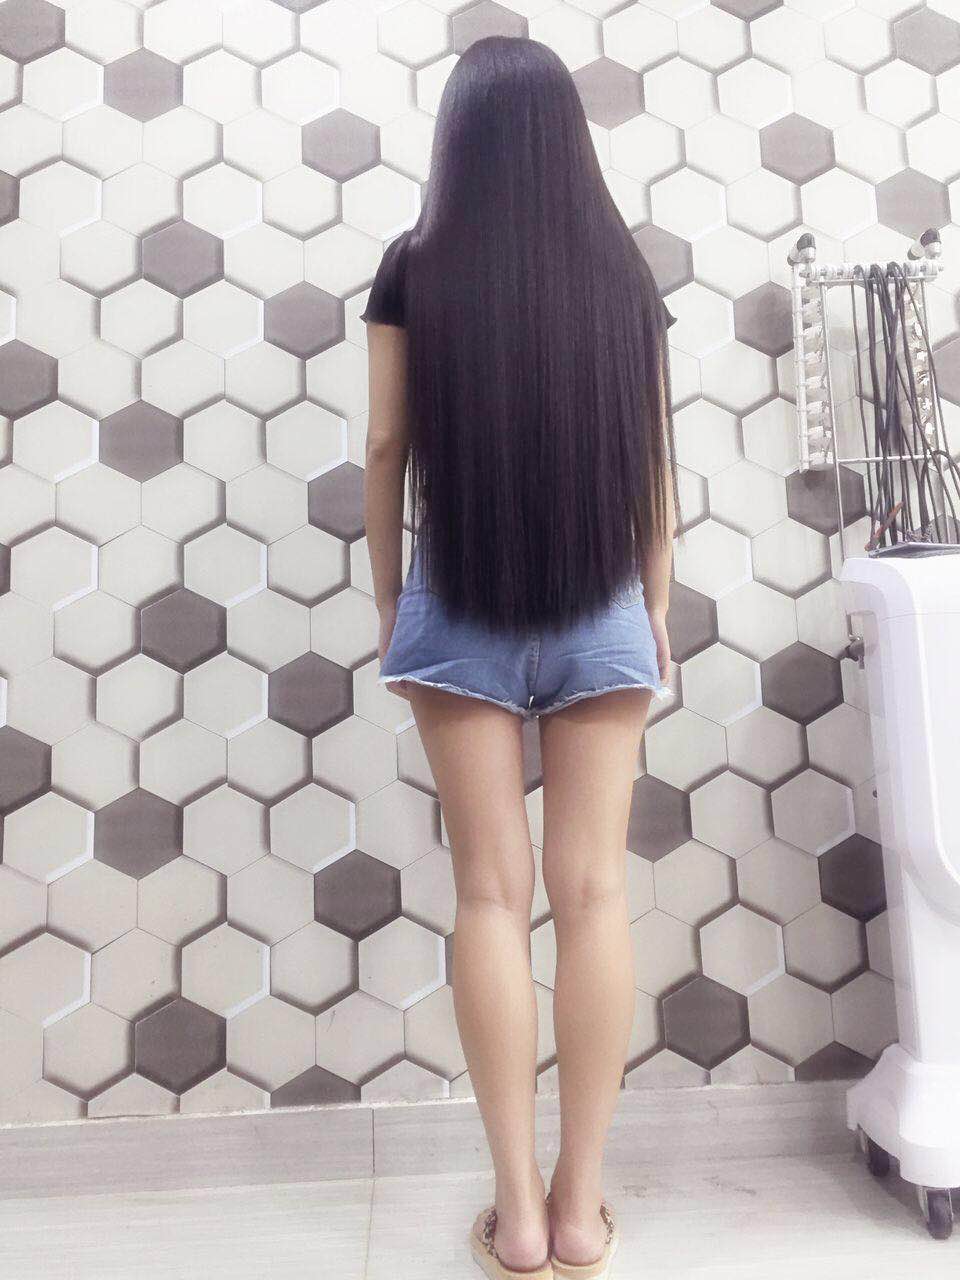 Hip length silky long hair